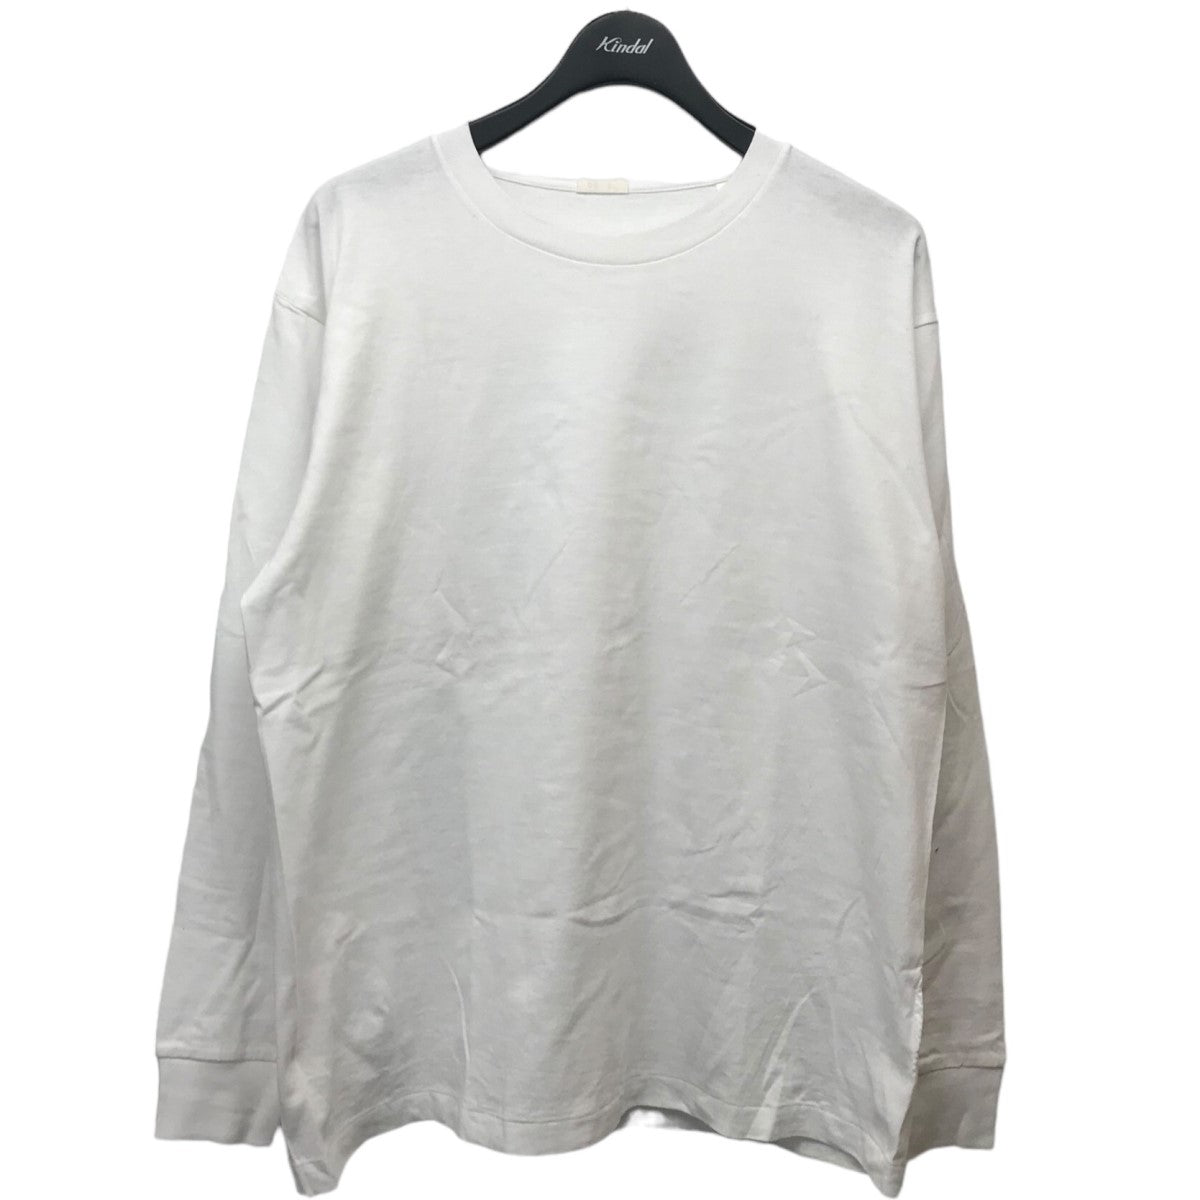 COMOLI(コモリ) 空紡天竺長袖Tシャツ X01-05008 ホワイト サイズ M 